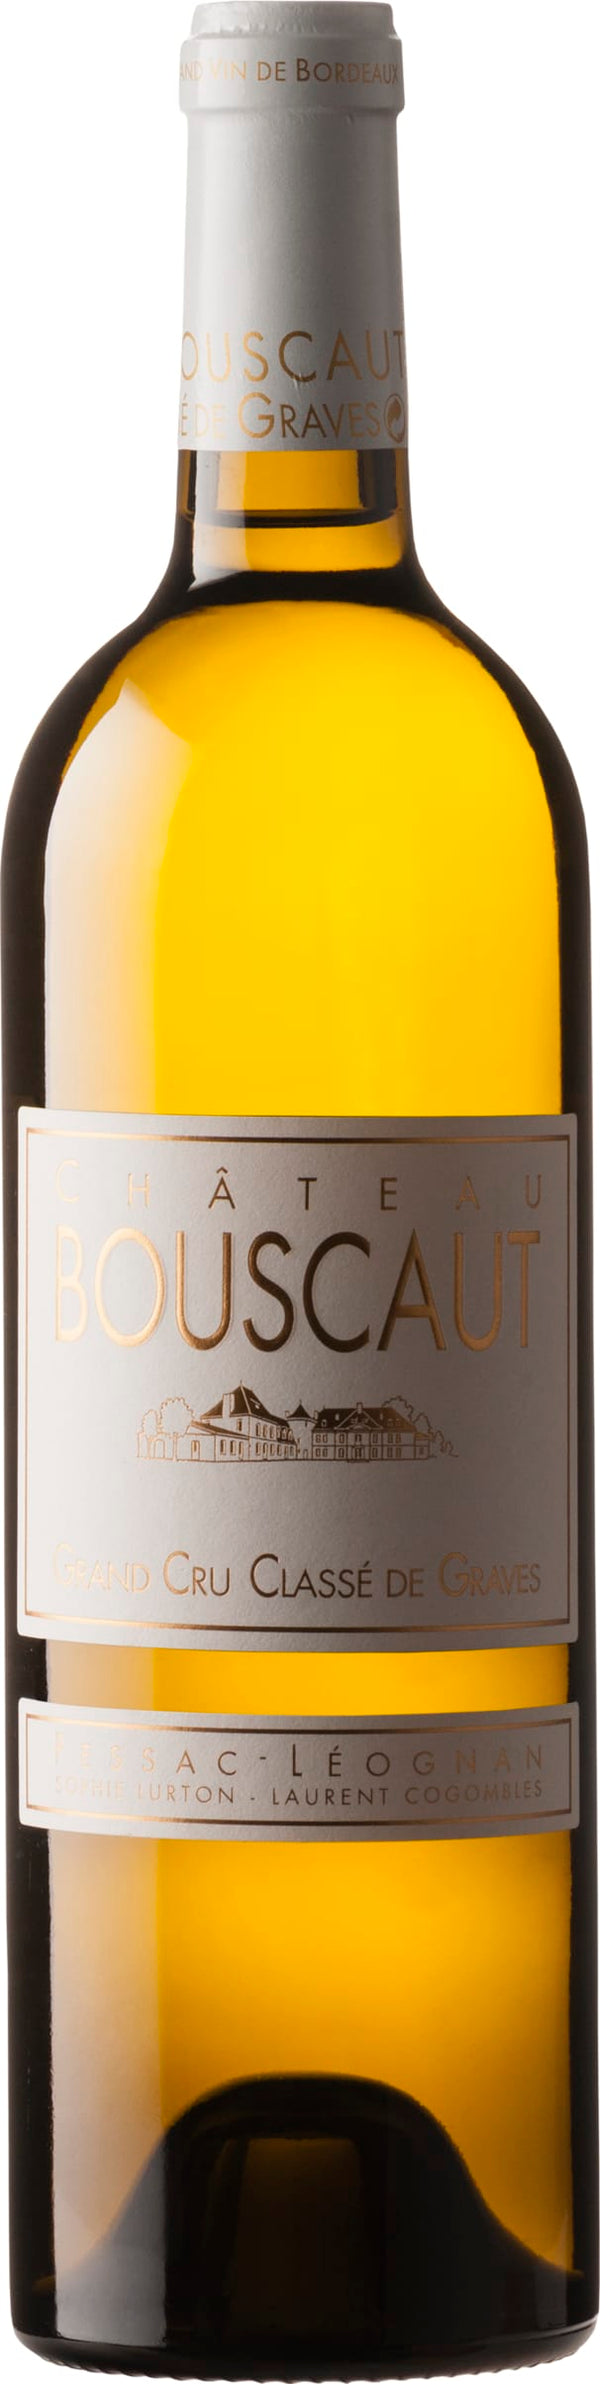 Chateau Bouscaut Pessac-Leognan Blanc, Cru Classe 2019 6x75cl - Just Wines 